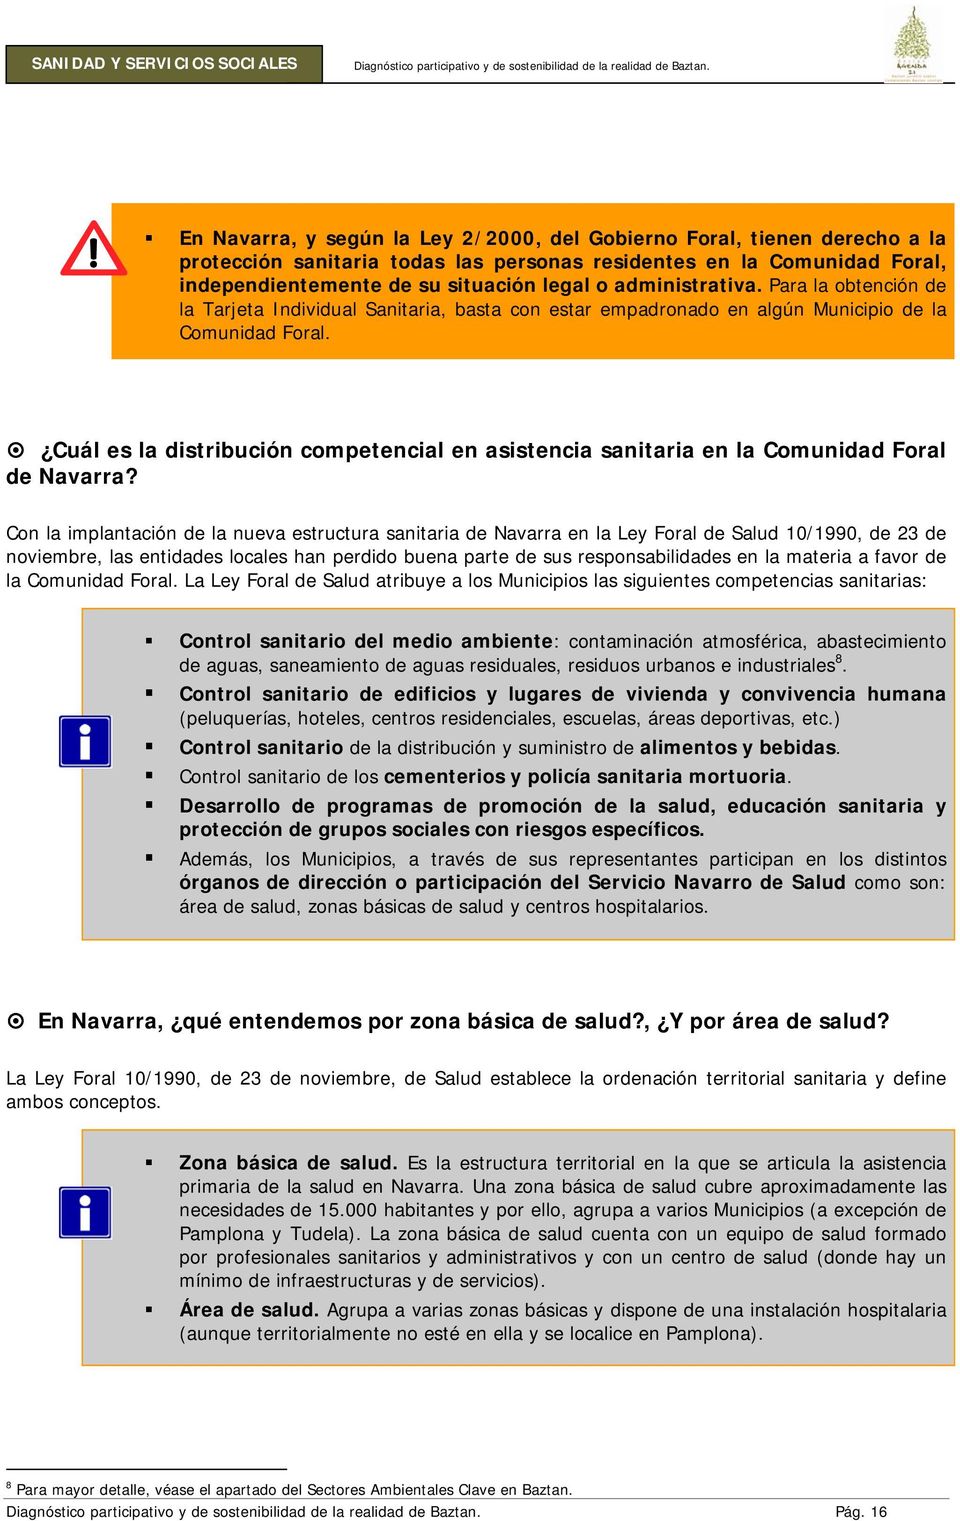 Cuál es la distribución competencial en asistencia sanitaria en la Comunidad Foral de Navarra?